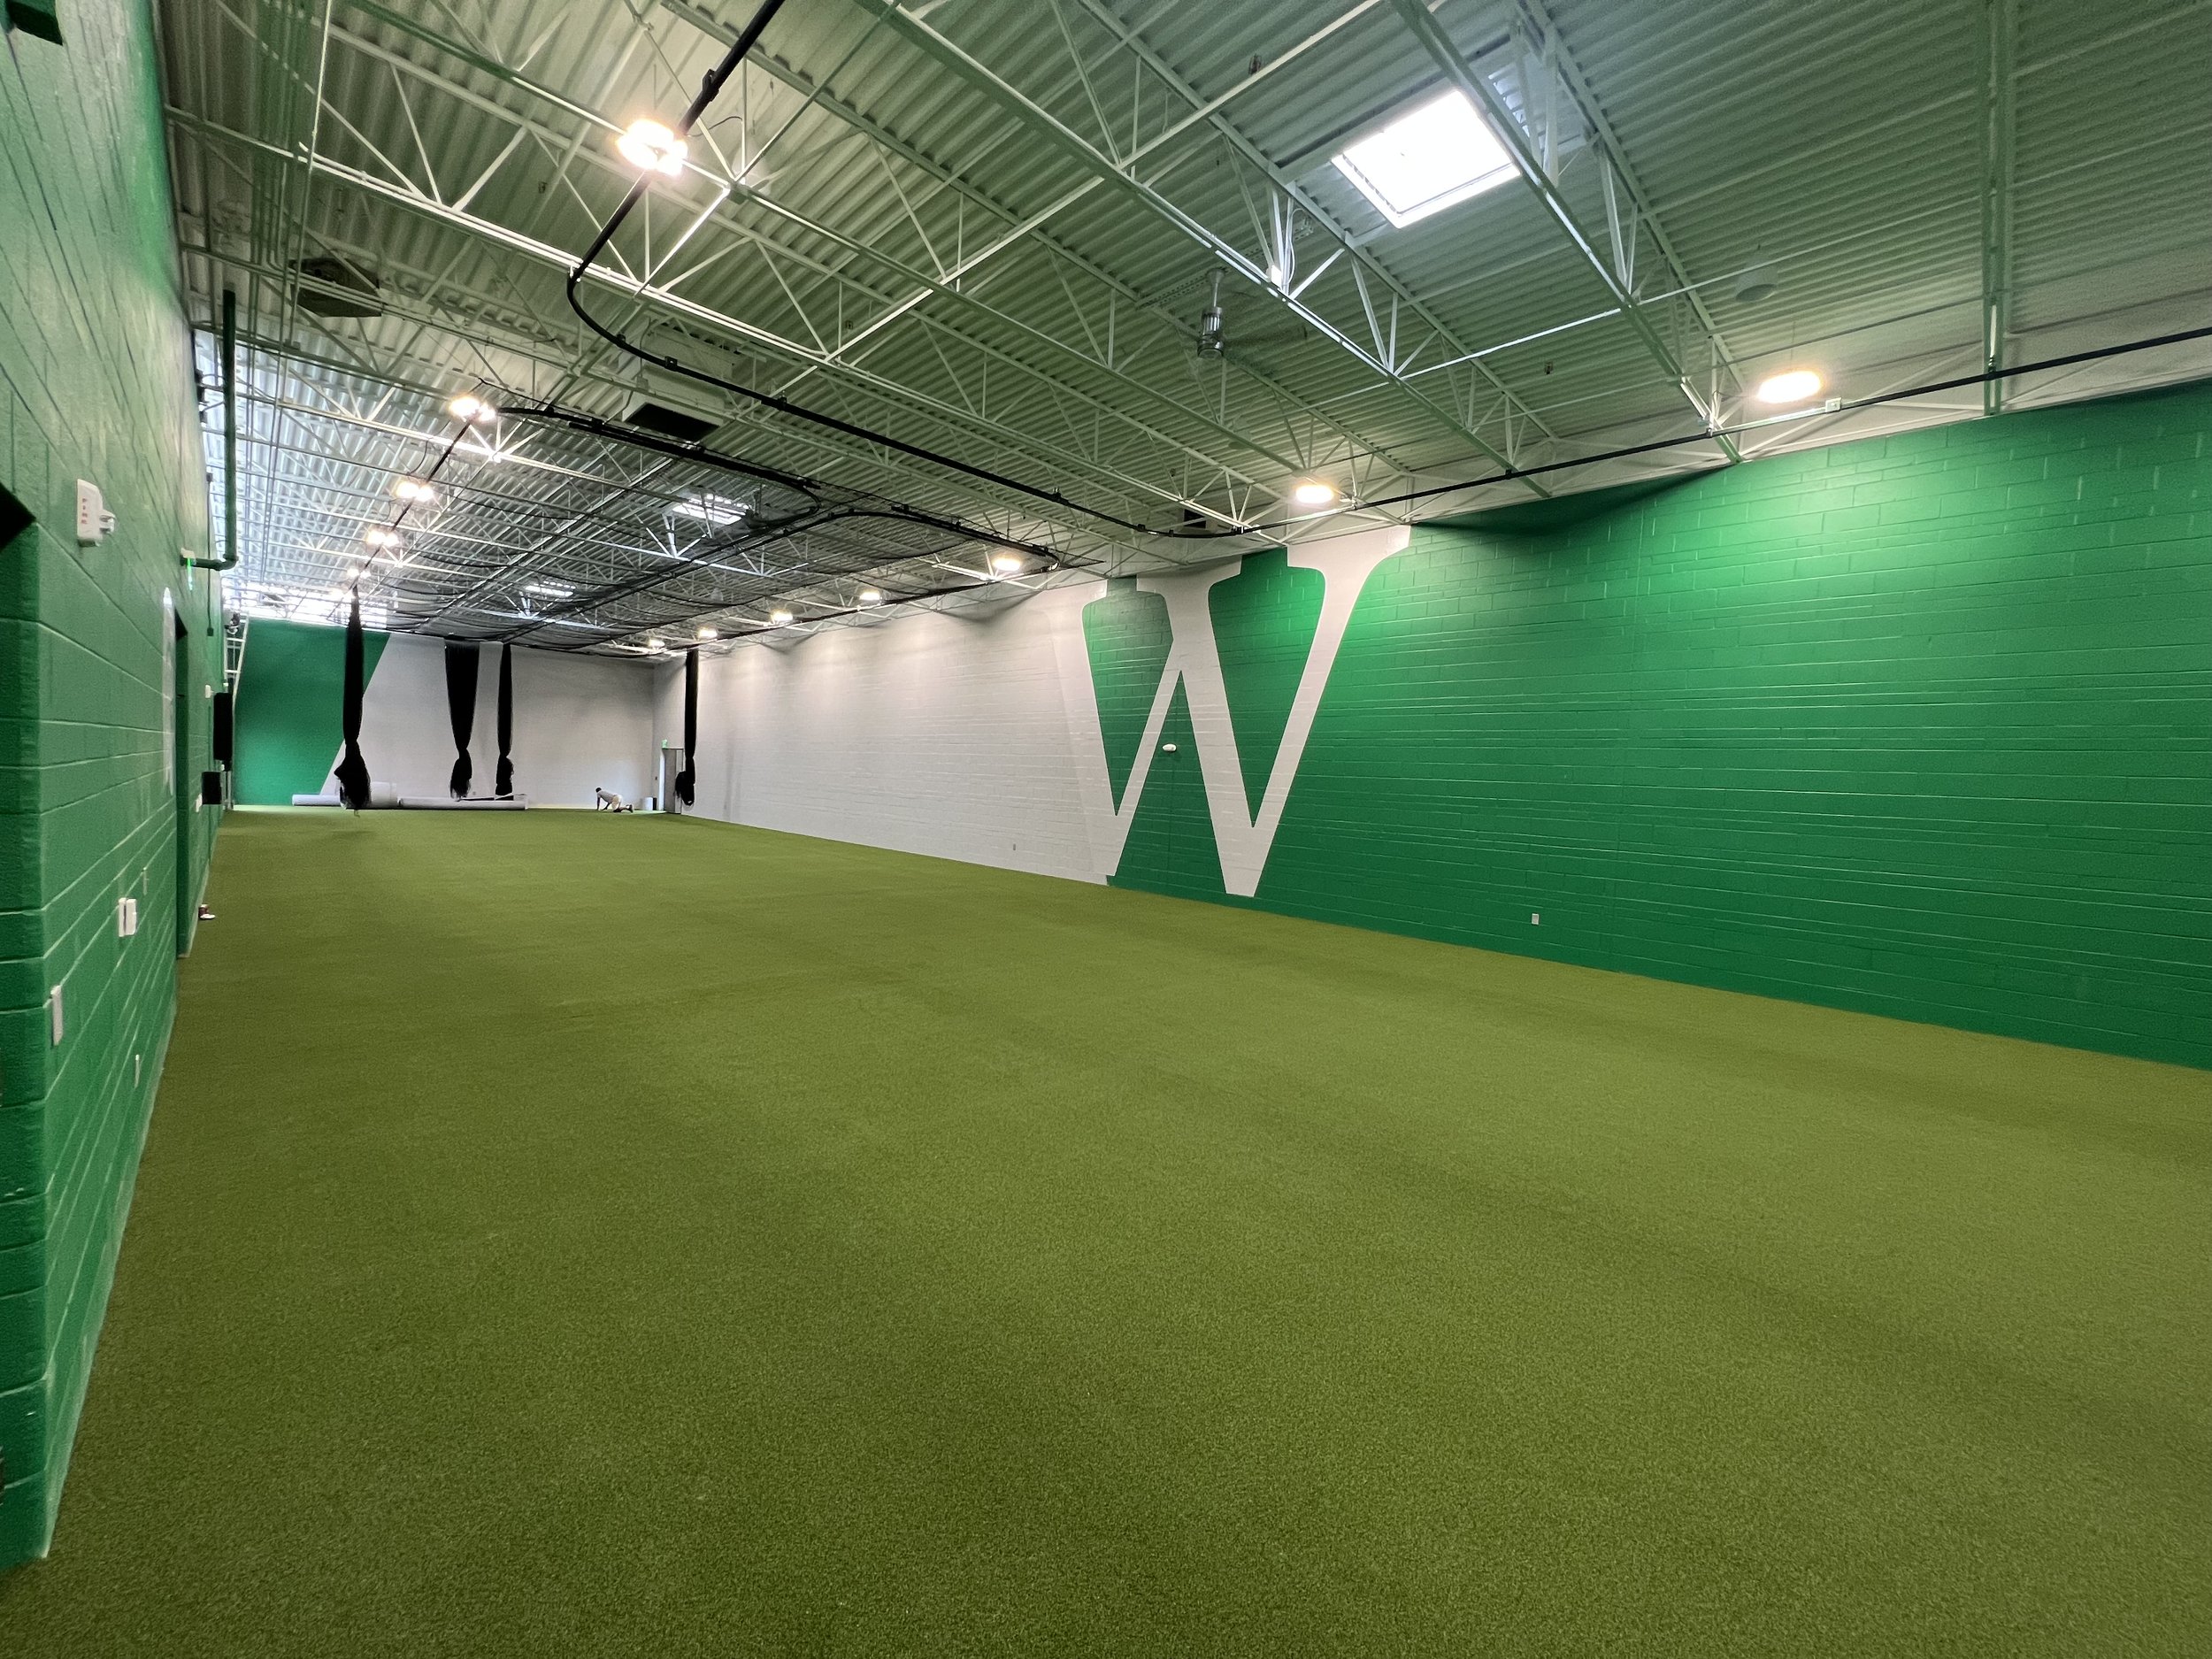 Webb School indoor facility, Knoxville, TN